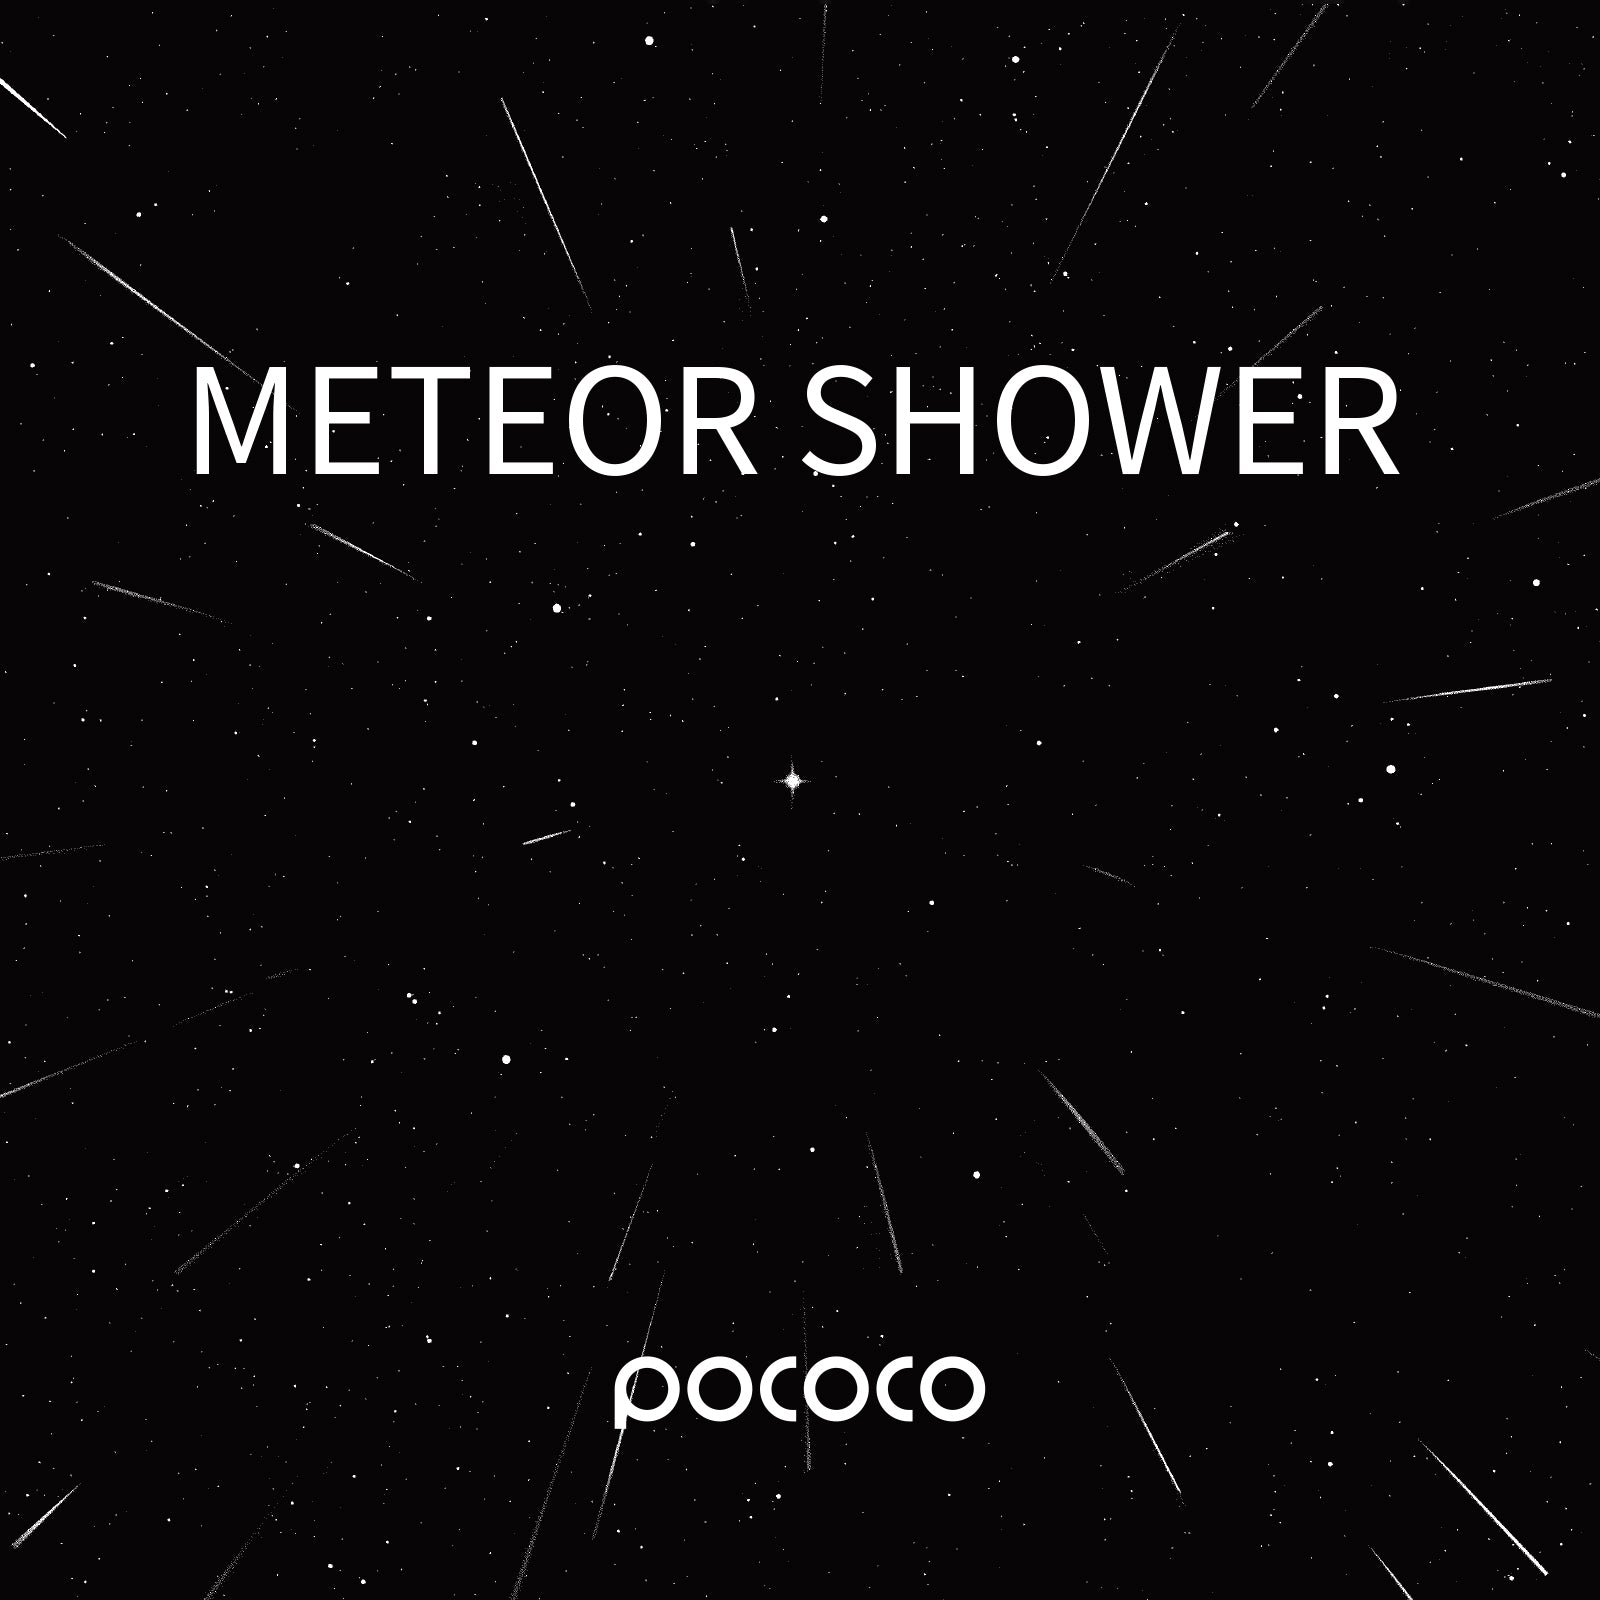 POCOCO Galaxy Projector Disc - Meteor Shower